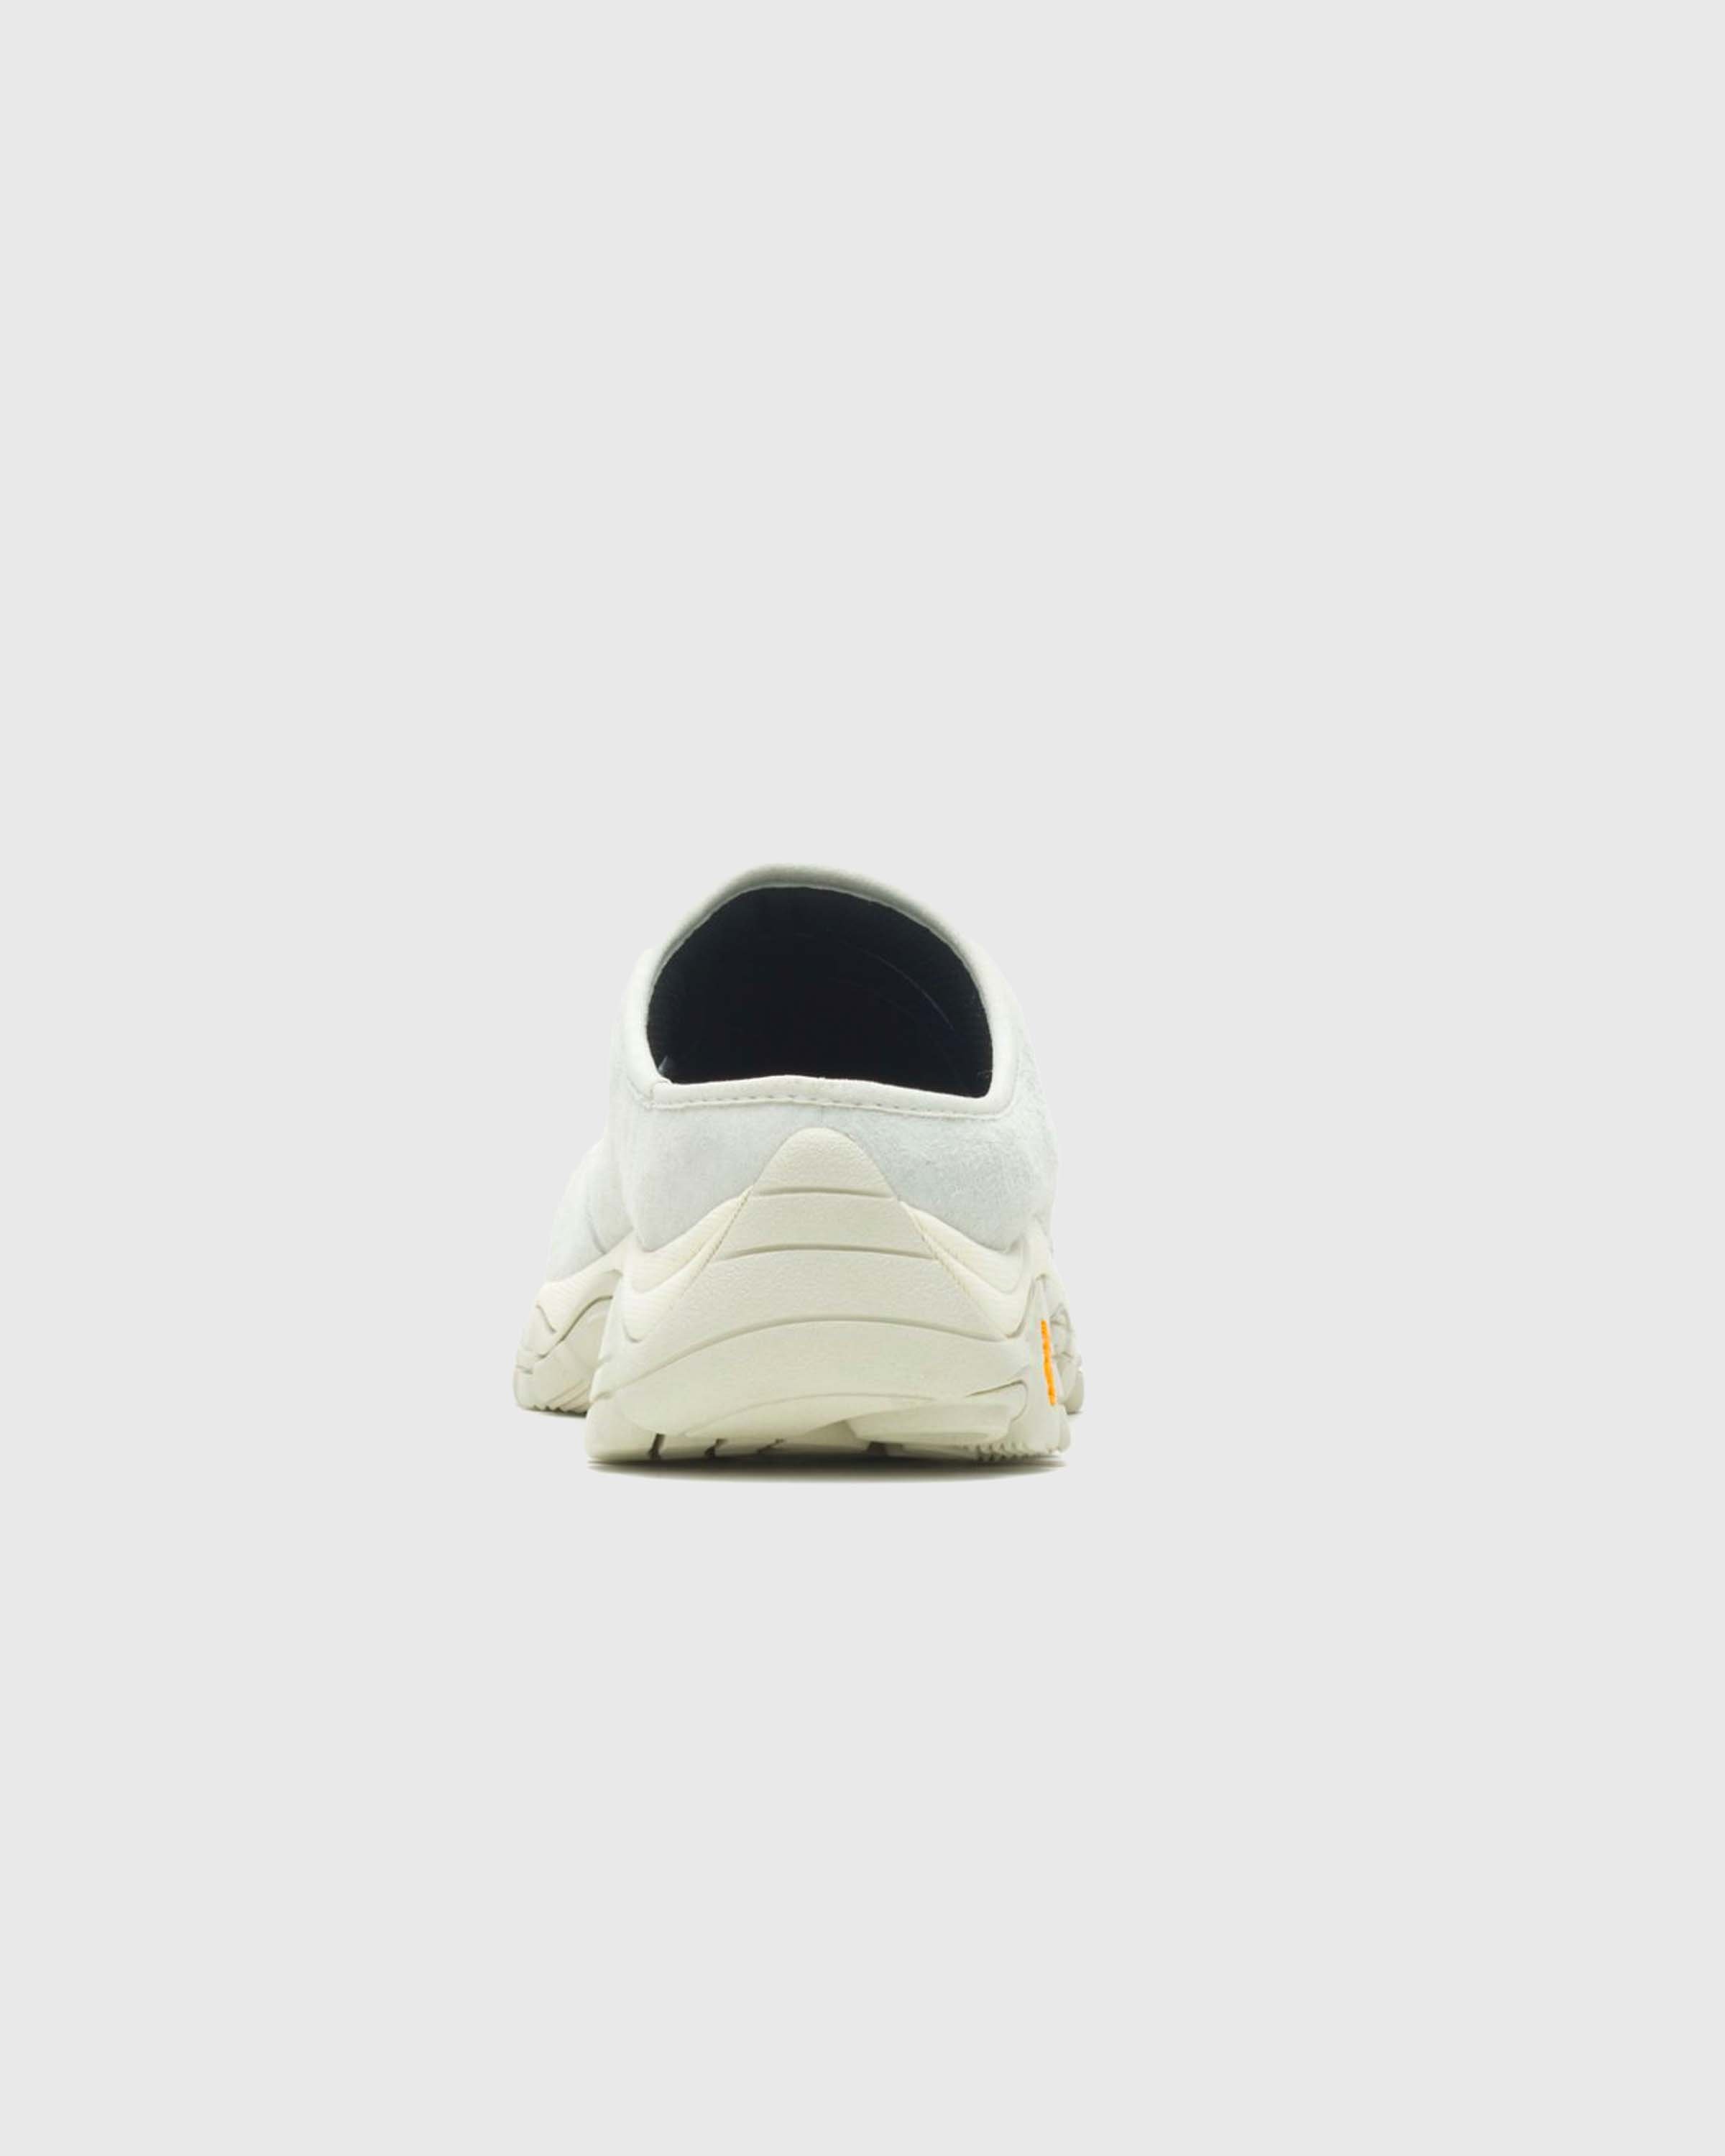 Merrell - Moab Retro Slide 1TRL Birch - Footwear - White - Image 3